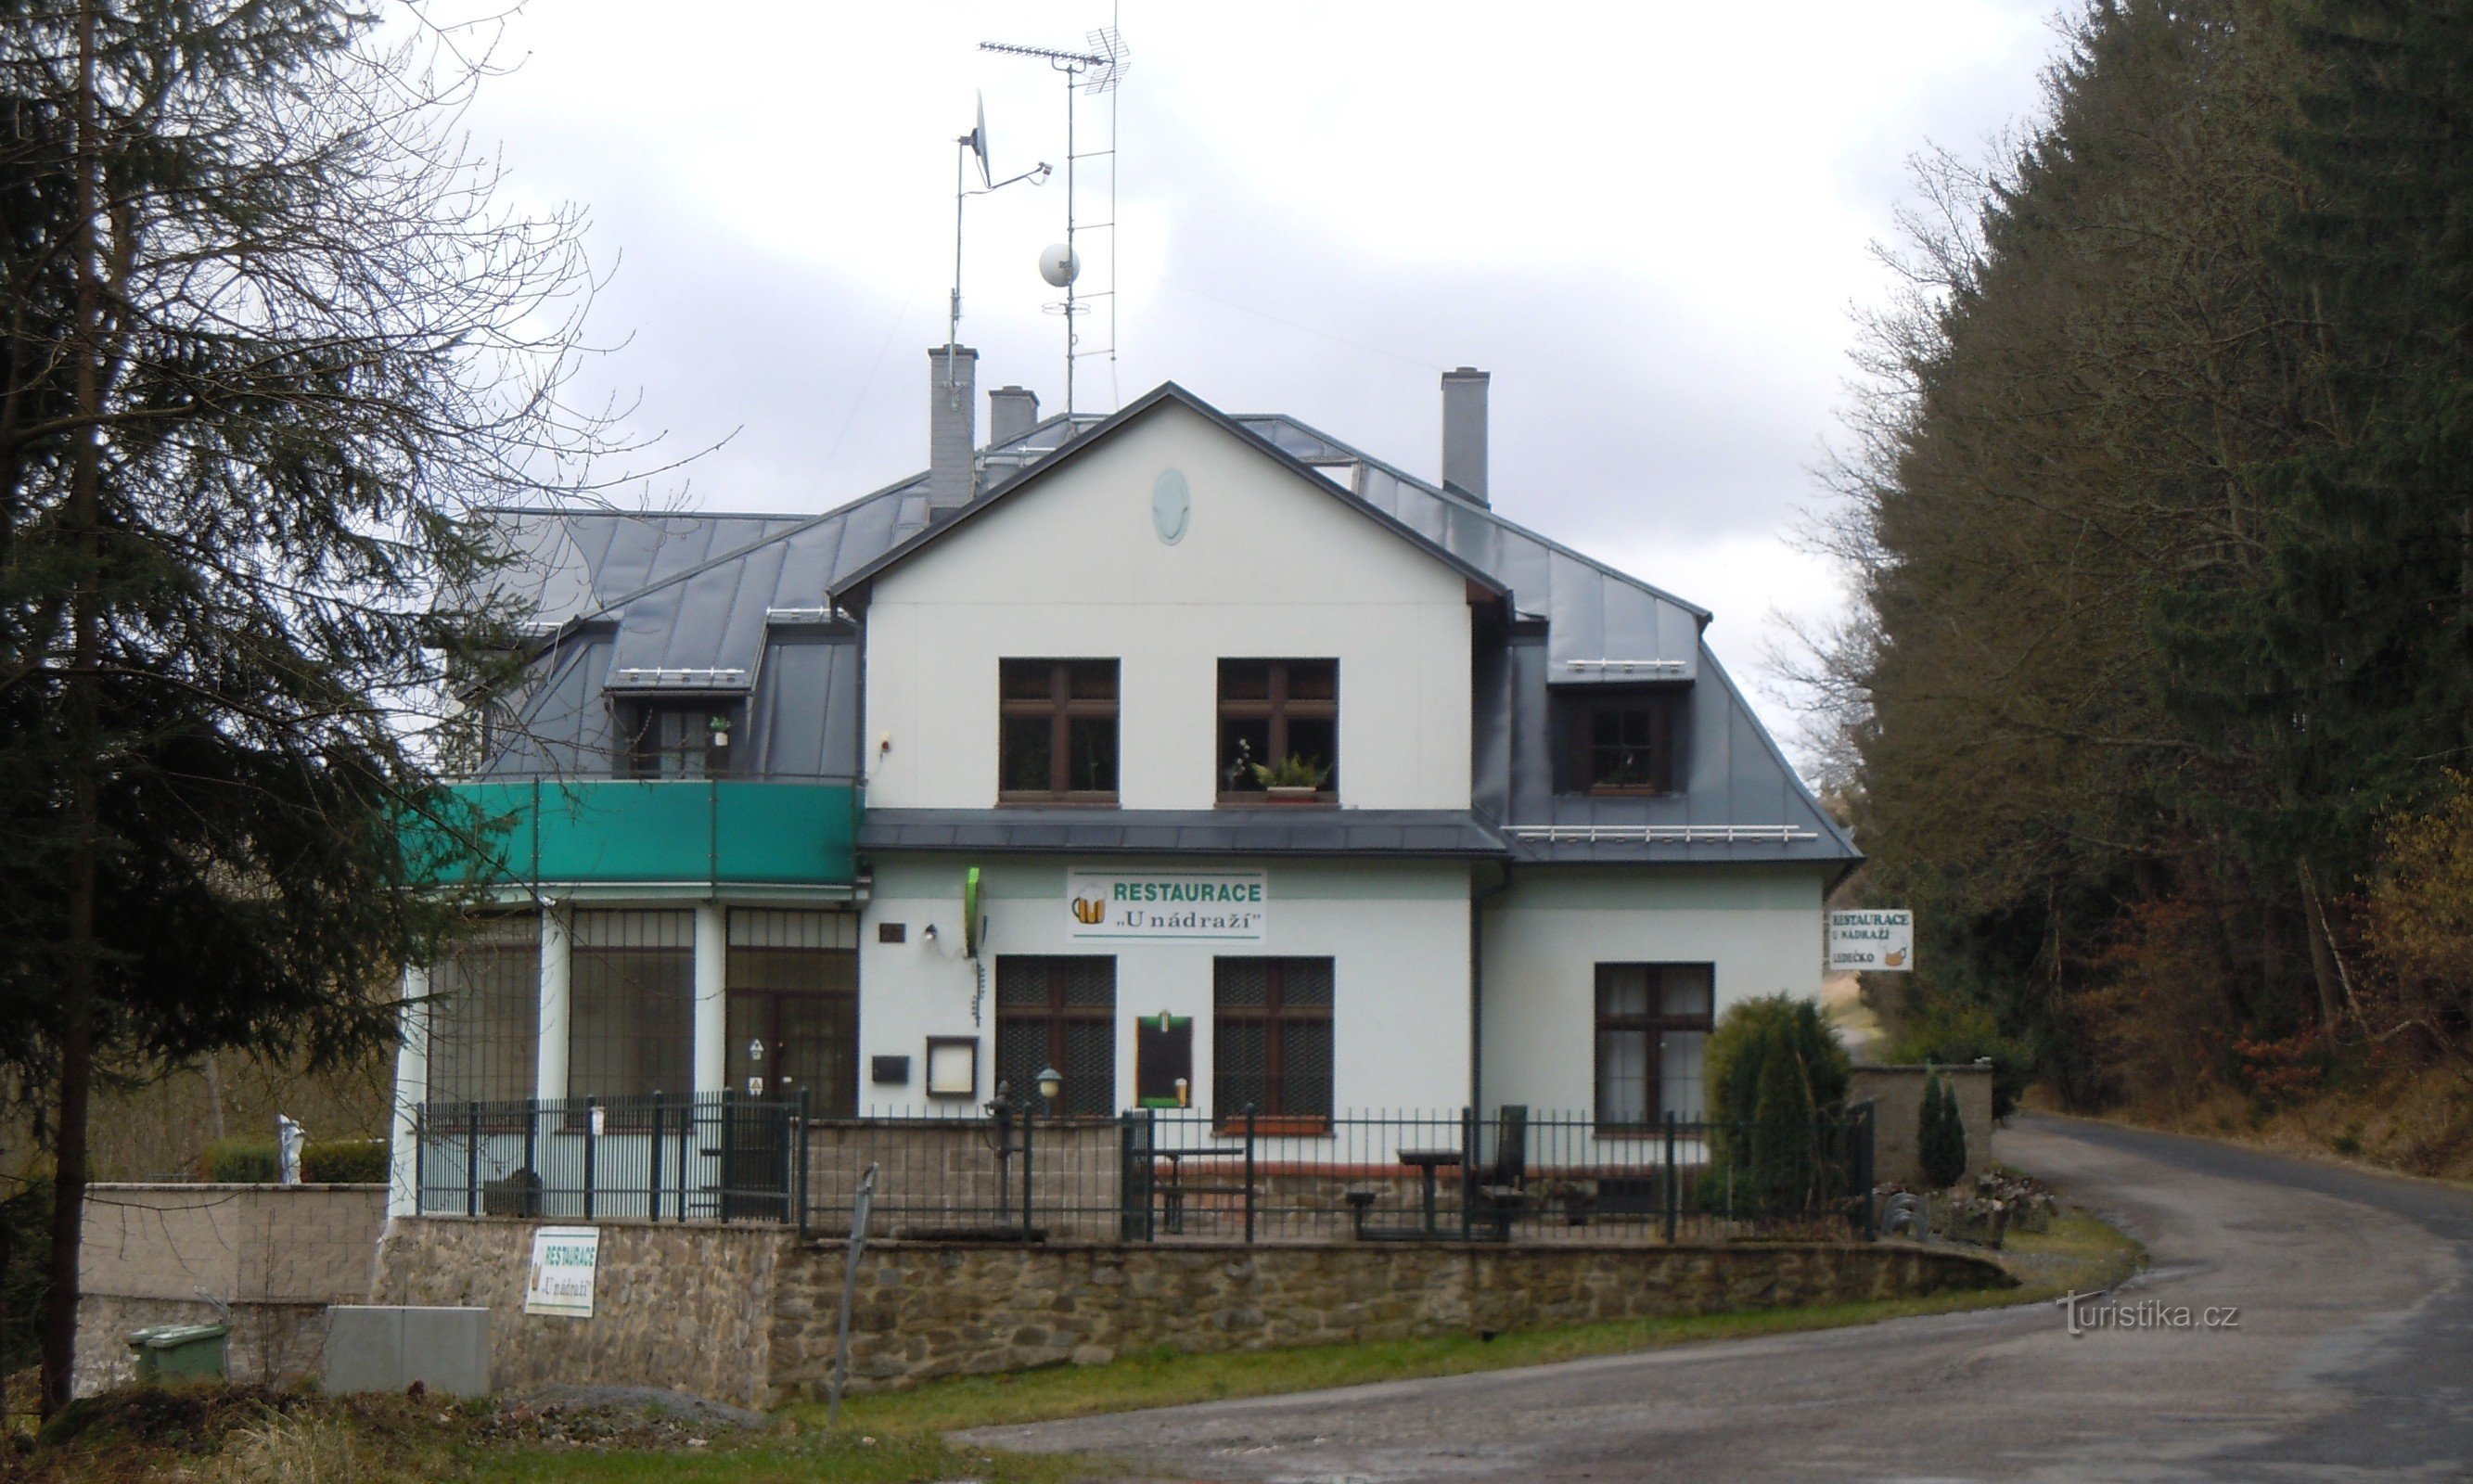 edificio ristorante vicino alla stazione